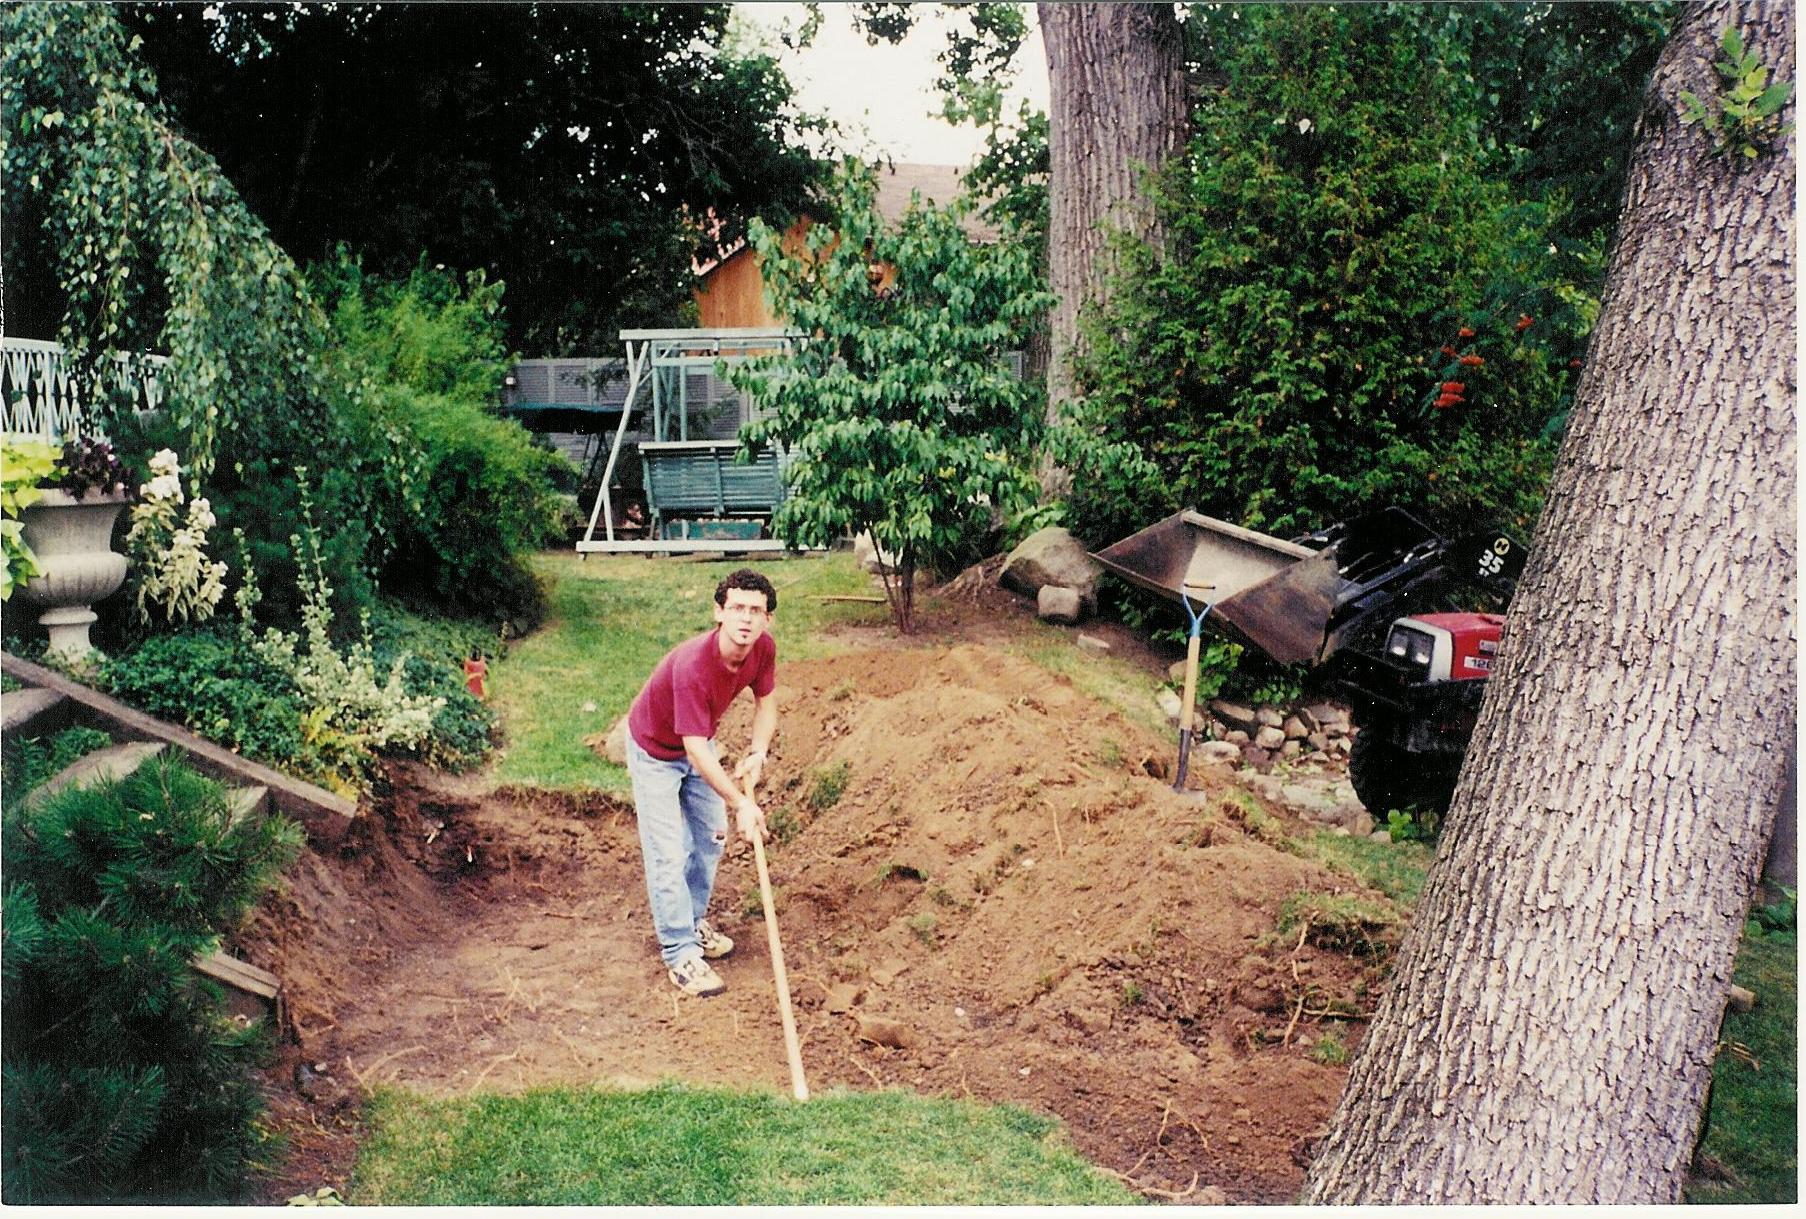 C’est en 2001 que les préparatifs ont eu lieu pour recevoir le Gazébo pré construit. Ici, c’est l’excavation pour fabriquer une bonne assise pour une plate-forme solide. Avec des accès limités, pas évident de réaliser les travaux au jardin.